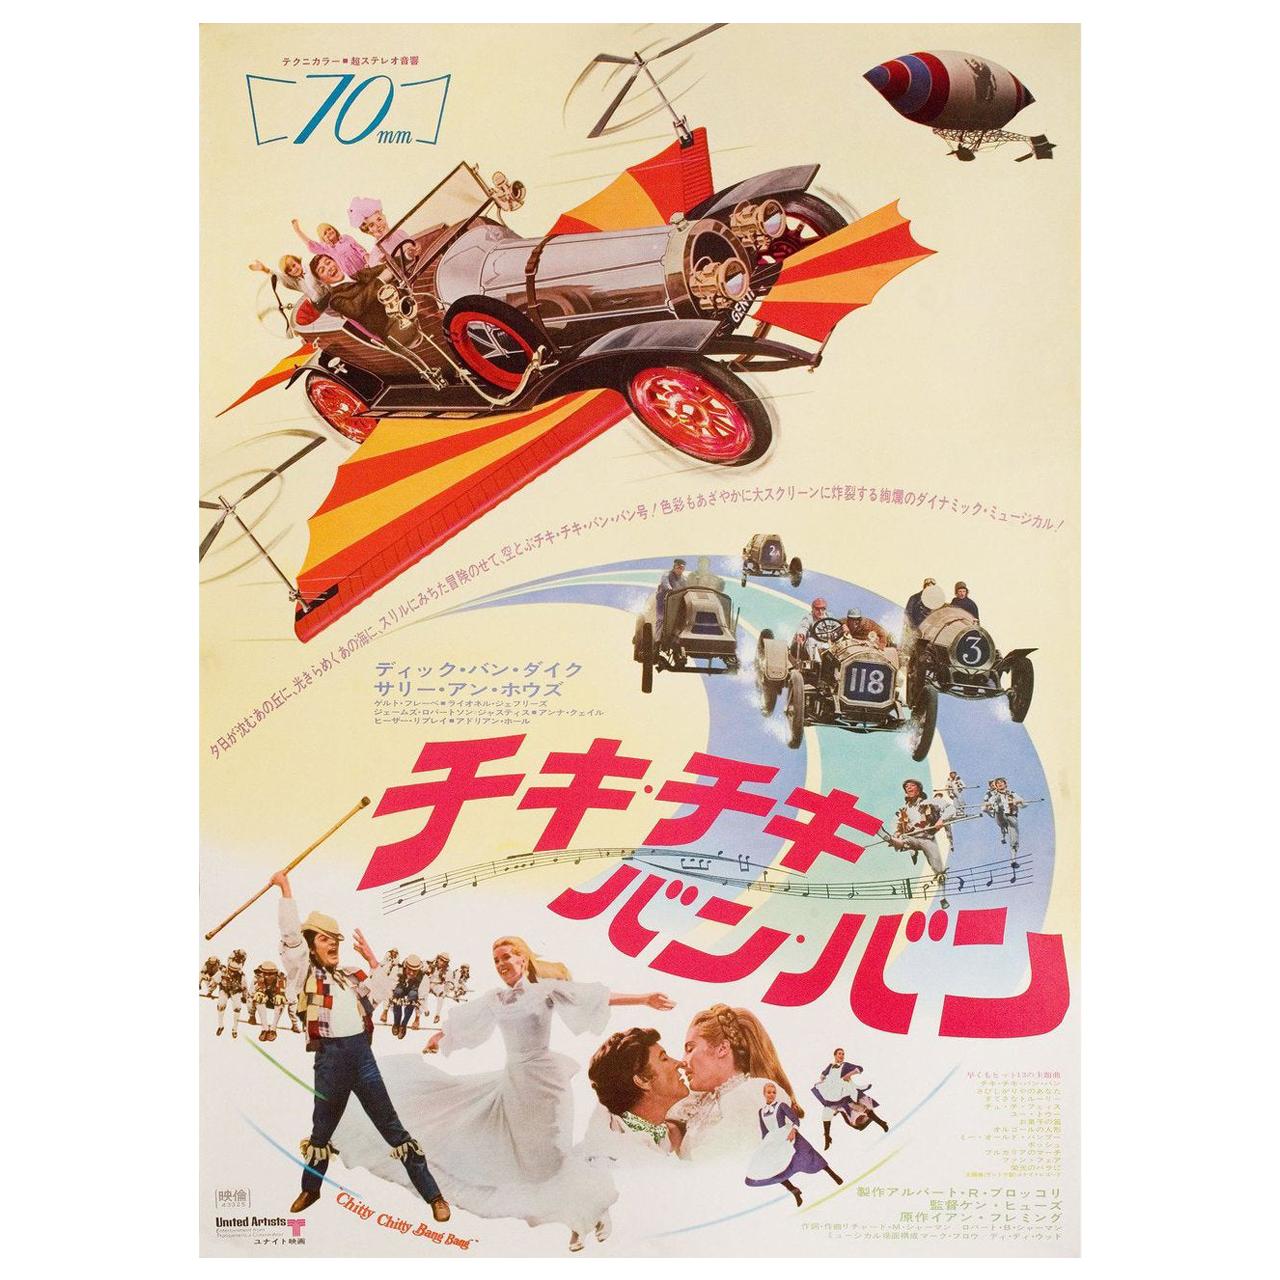 'Chitty Chitty Bang Bang' 1969 Japanese B2 Film Poster